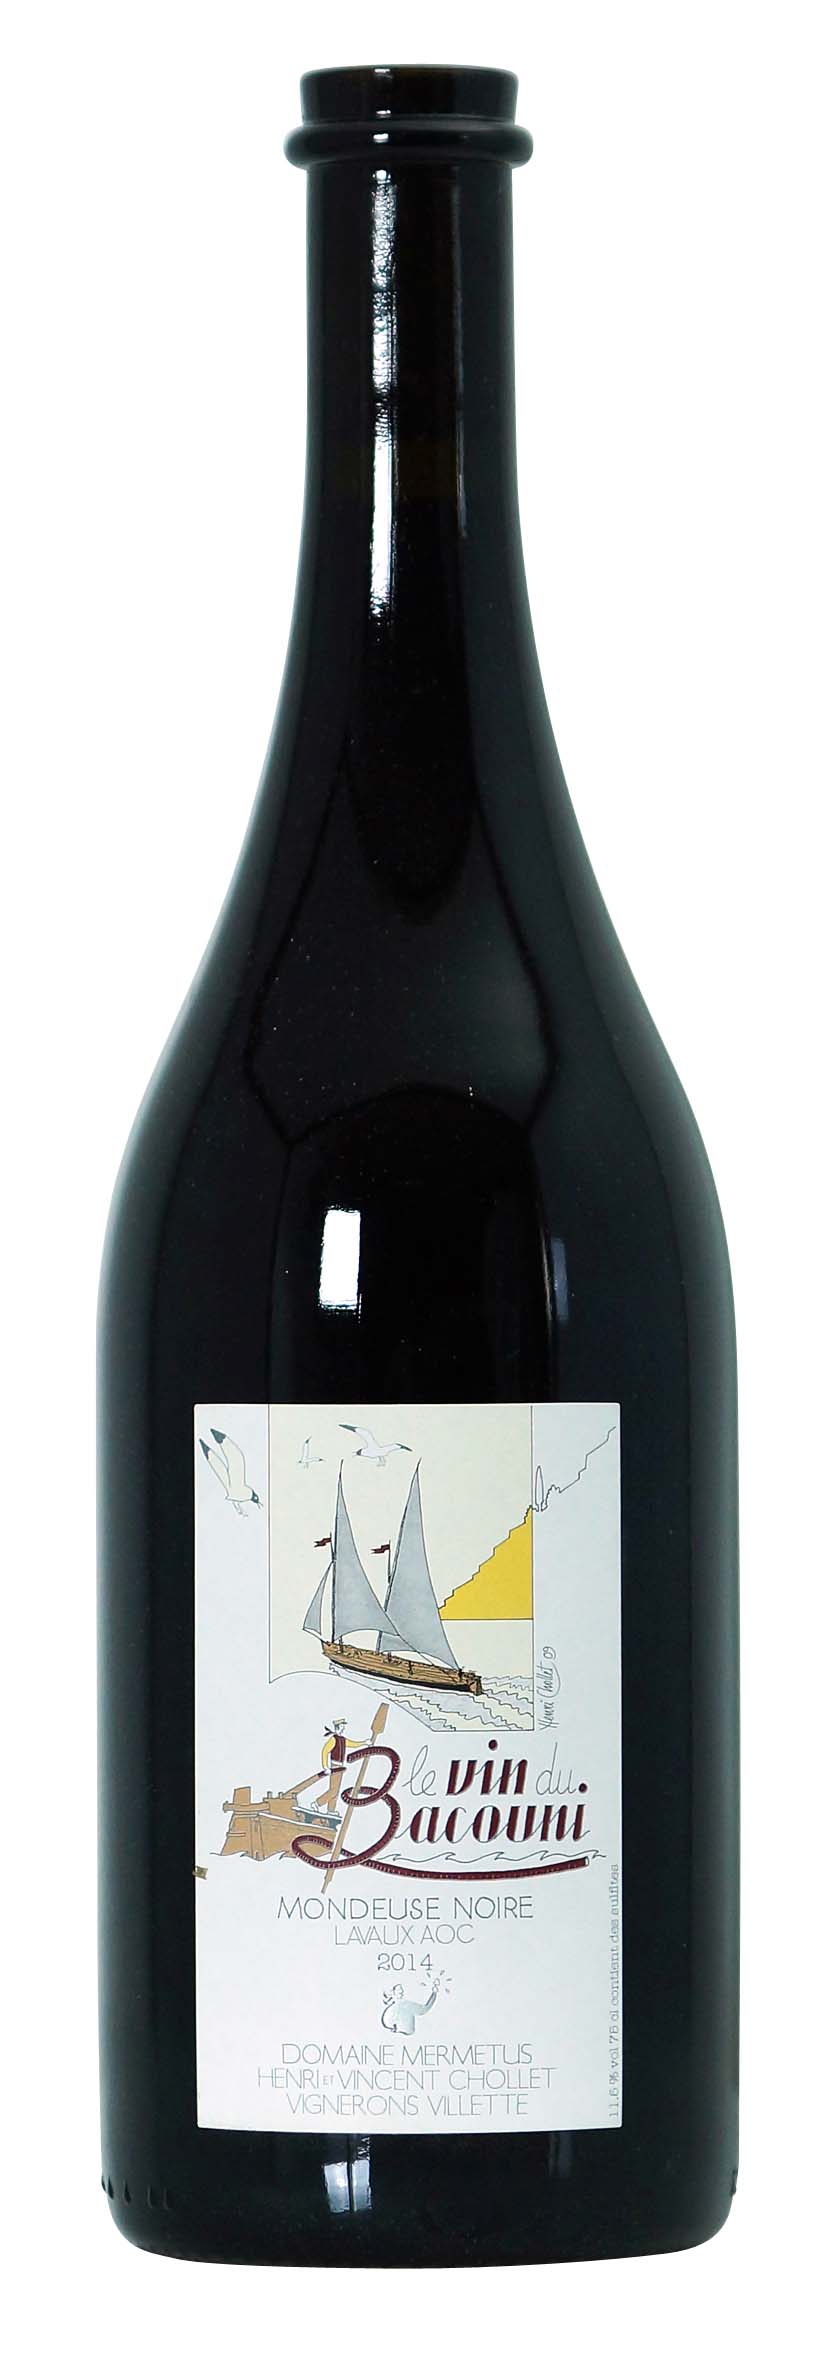 Lavaux AOC Le Vin du Bacouni Mondeuse Noire 2014